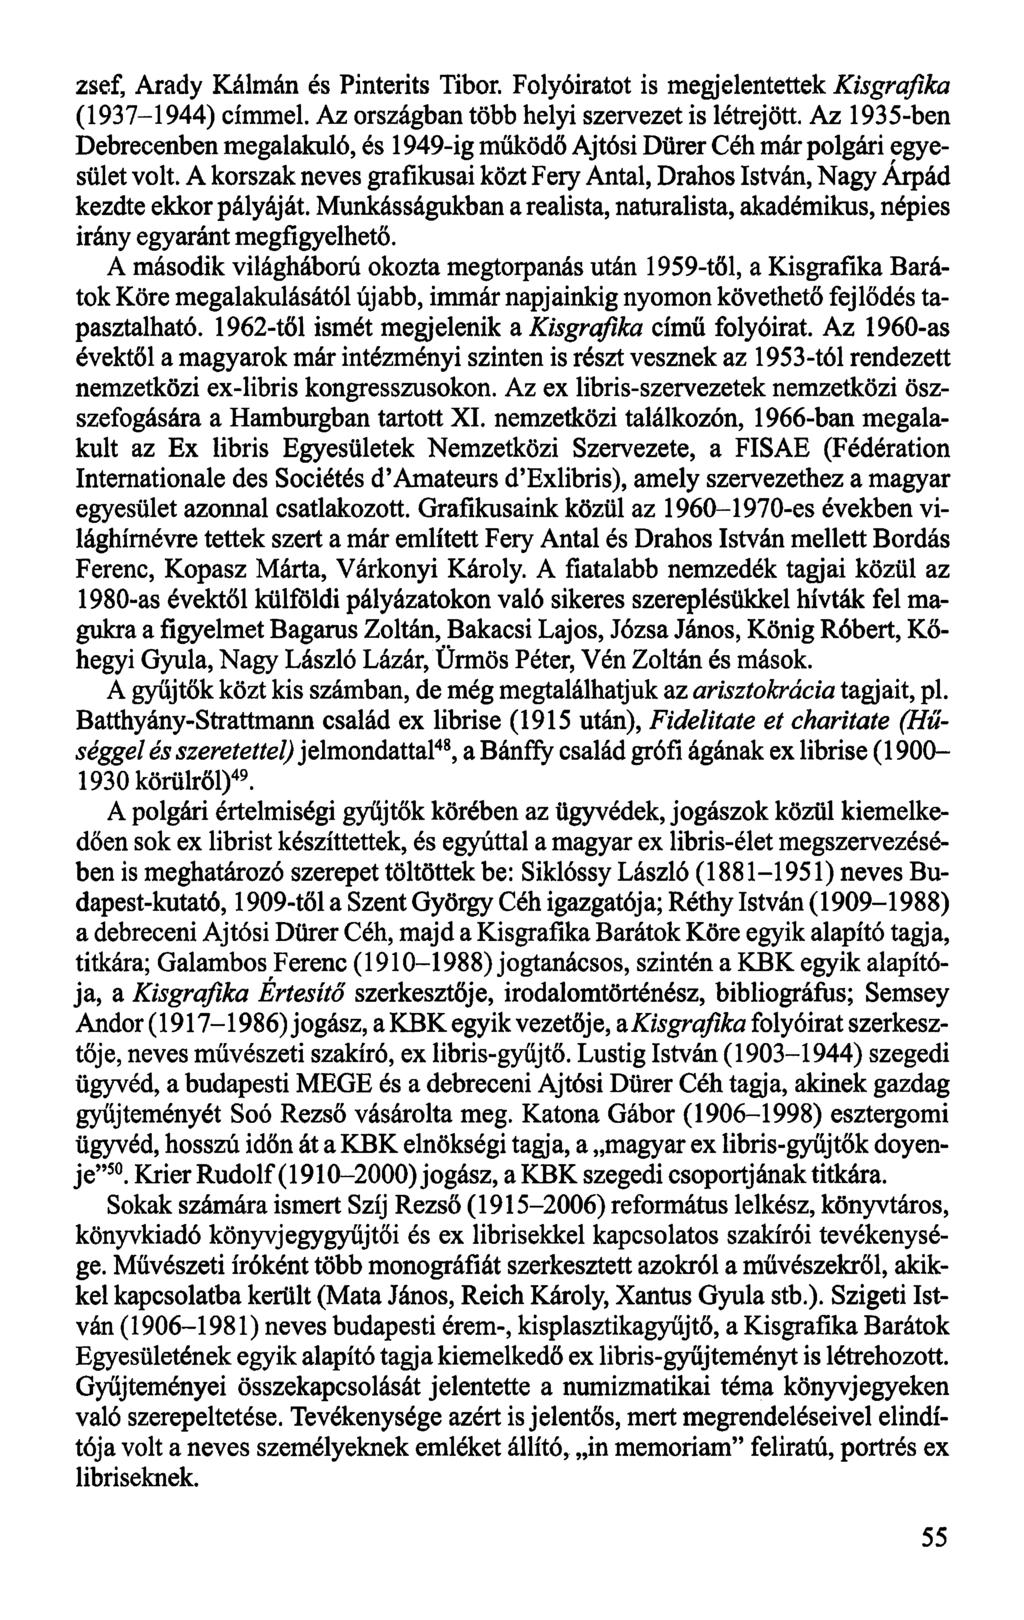 zsef, Arady Kálmán és Pinterits Tibor. Folyóiratot is megjelentettek Kisgrafika (1937-1944) címmel. Az országban több helyi szervezet is létrejött.